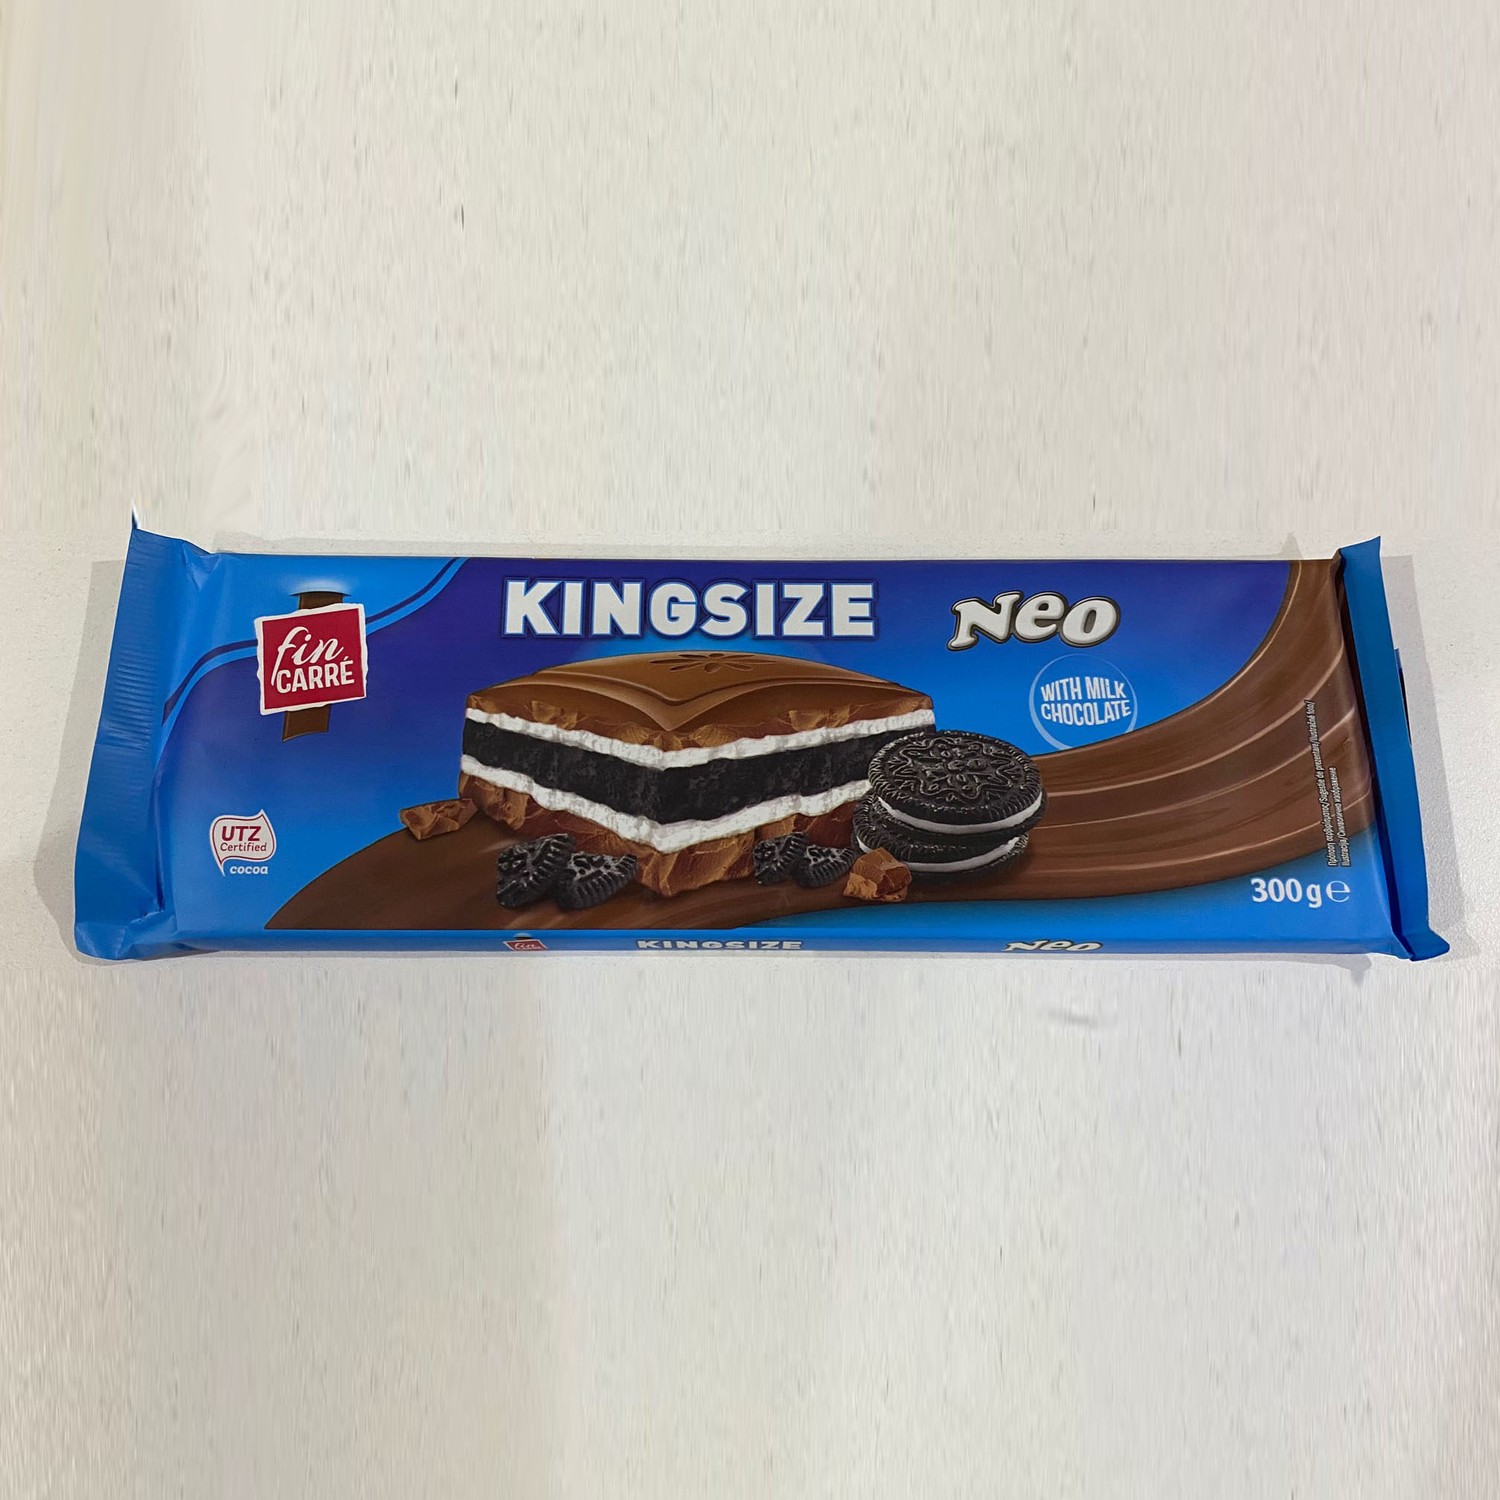 Fin Carre King Size Neo Sütlü Çikolata 3008 gr Fiyatı